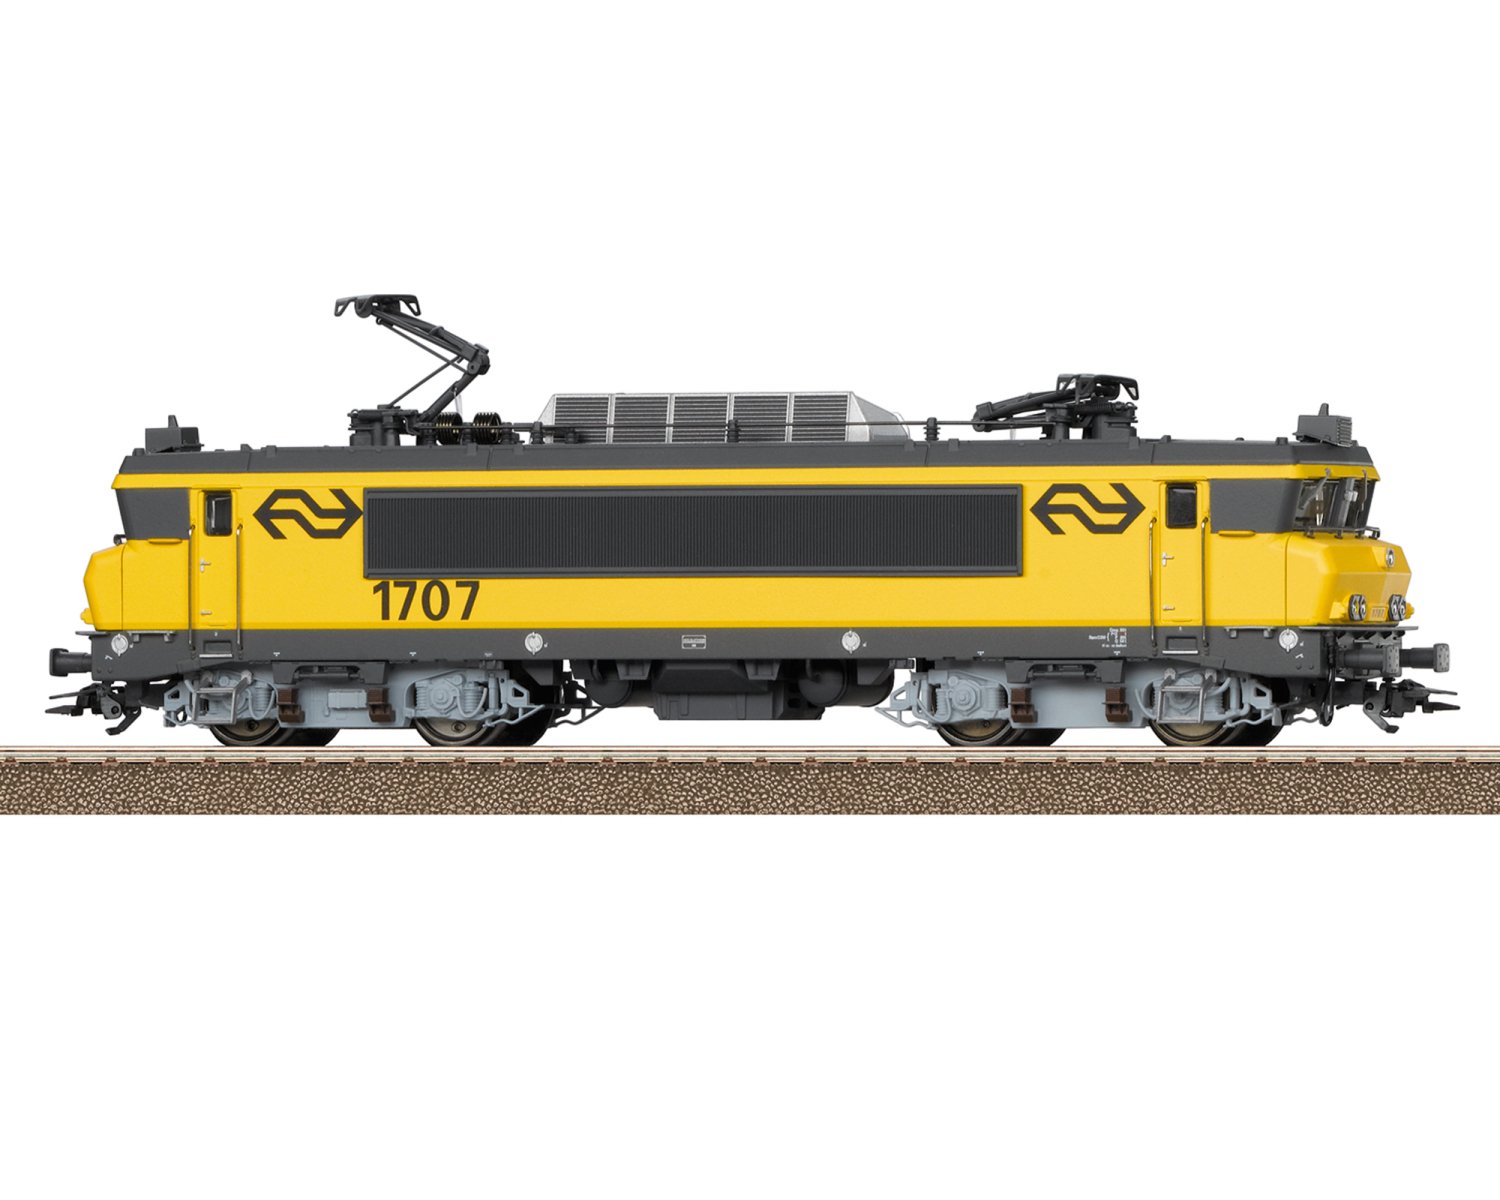 トリックス(Trix) HO Class 1700 25160 | オランダ鉄道 | DCC/mfx 